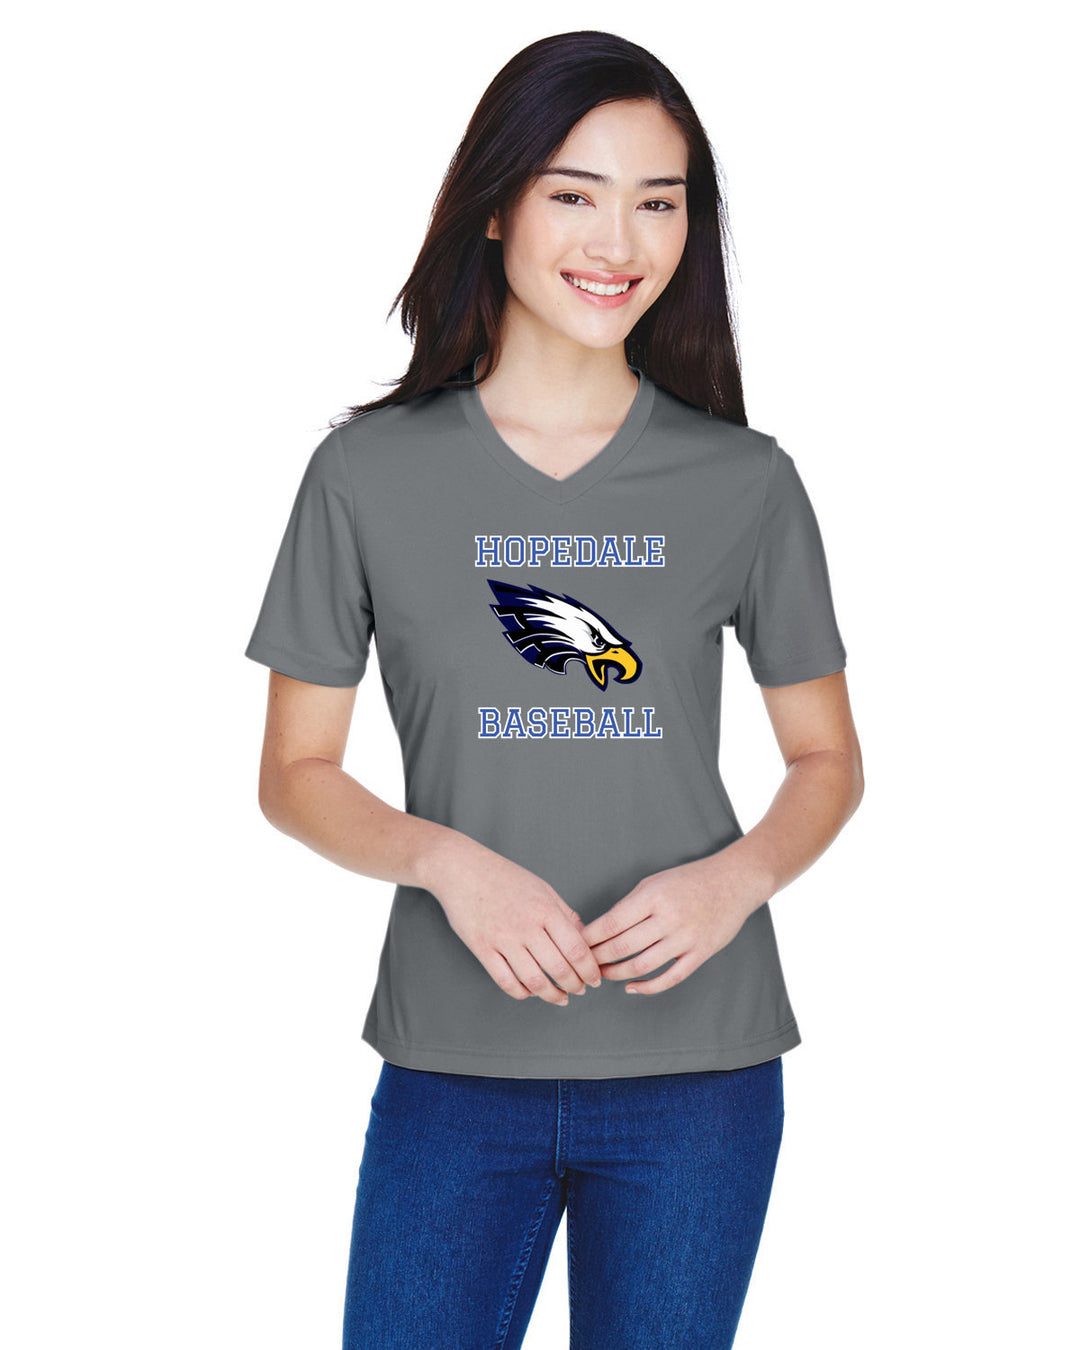 Hopedale Baseball - Women's Performance T-Shirt (TT11W)